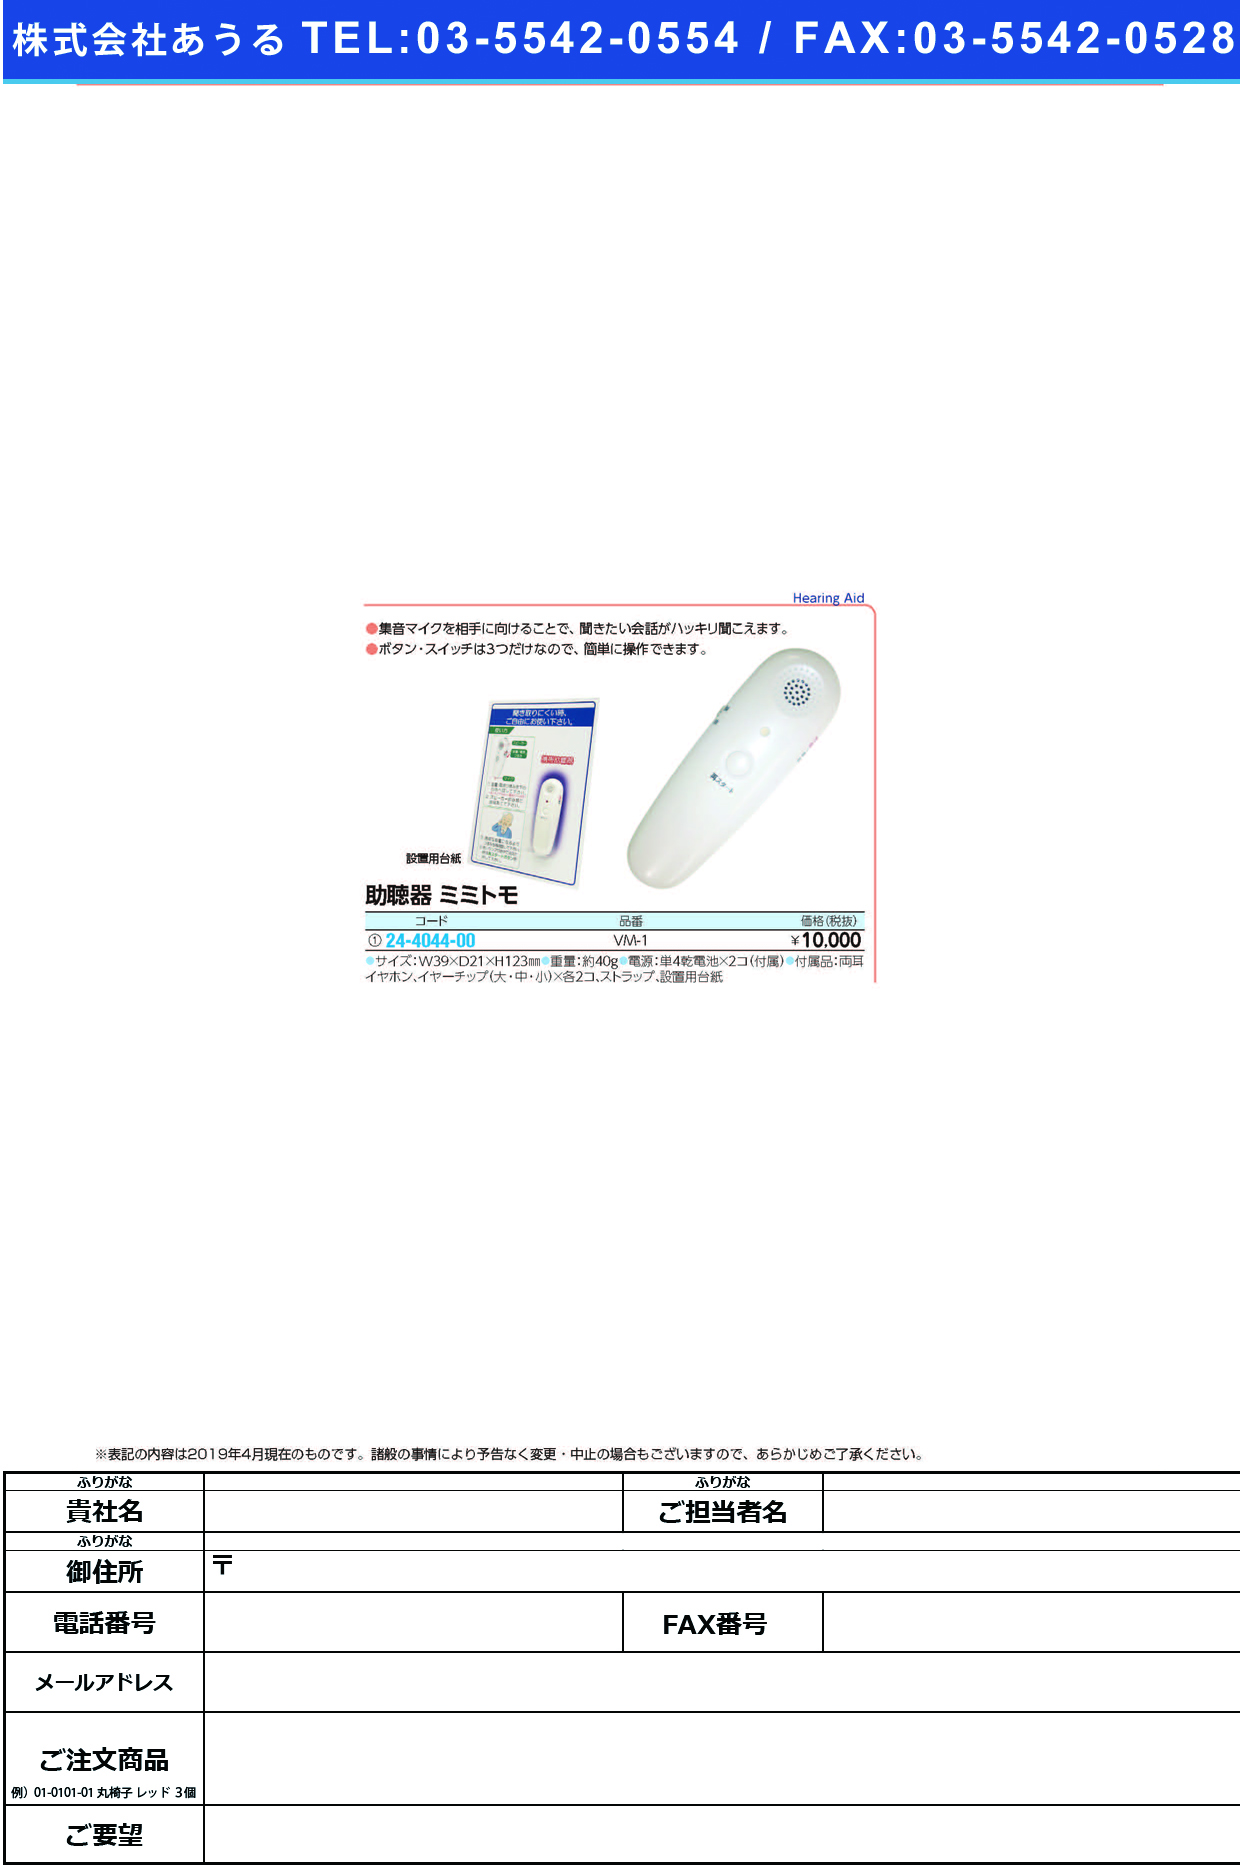 (24-4044-00)ボイスモニター携帯助聴器ミミトモ VM-1 ﾎﾞｲｽﾓﾆﾀｼﾞｮﾁｮｳｷﾐﾐﾄﾓ【1台単位】【2019年カタログ商品】